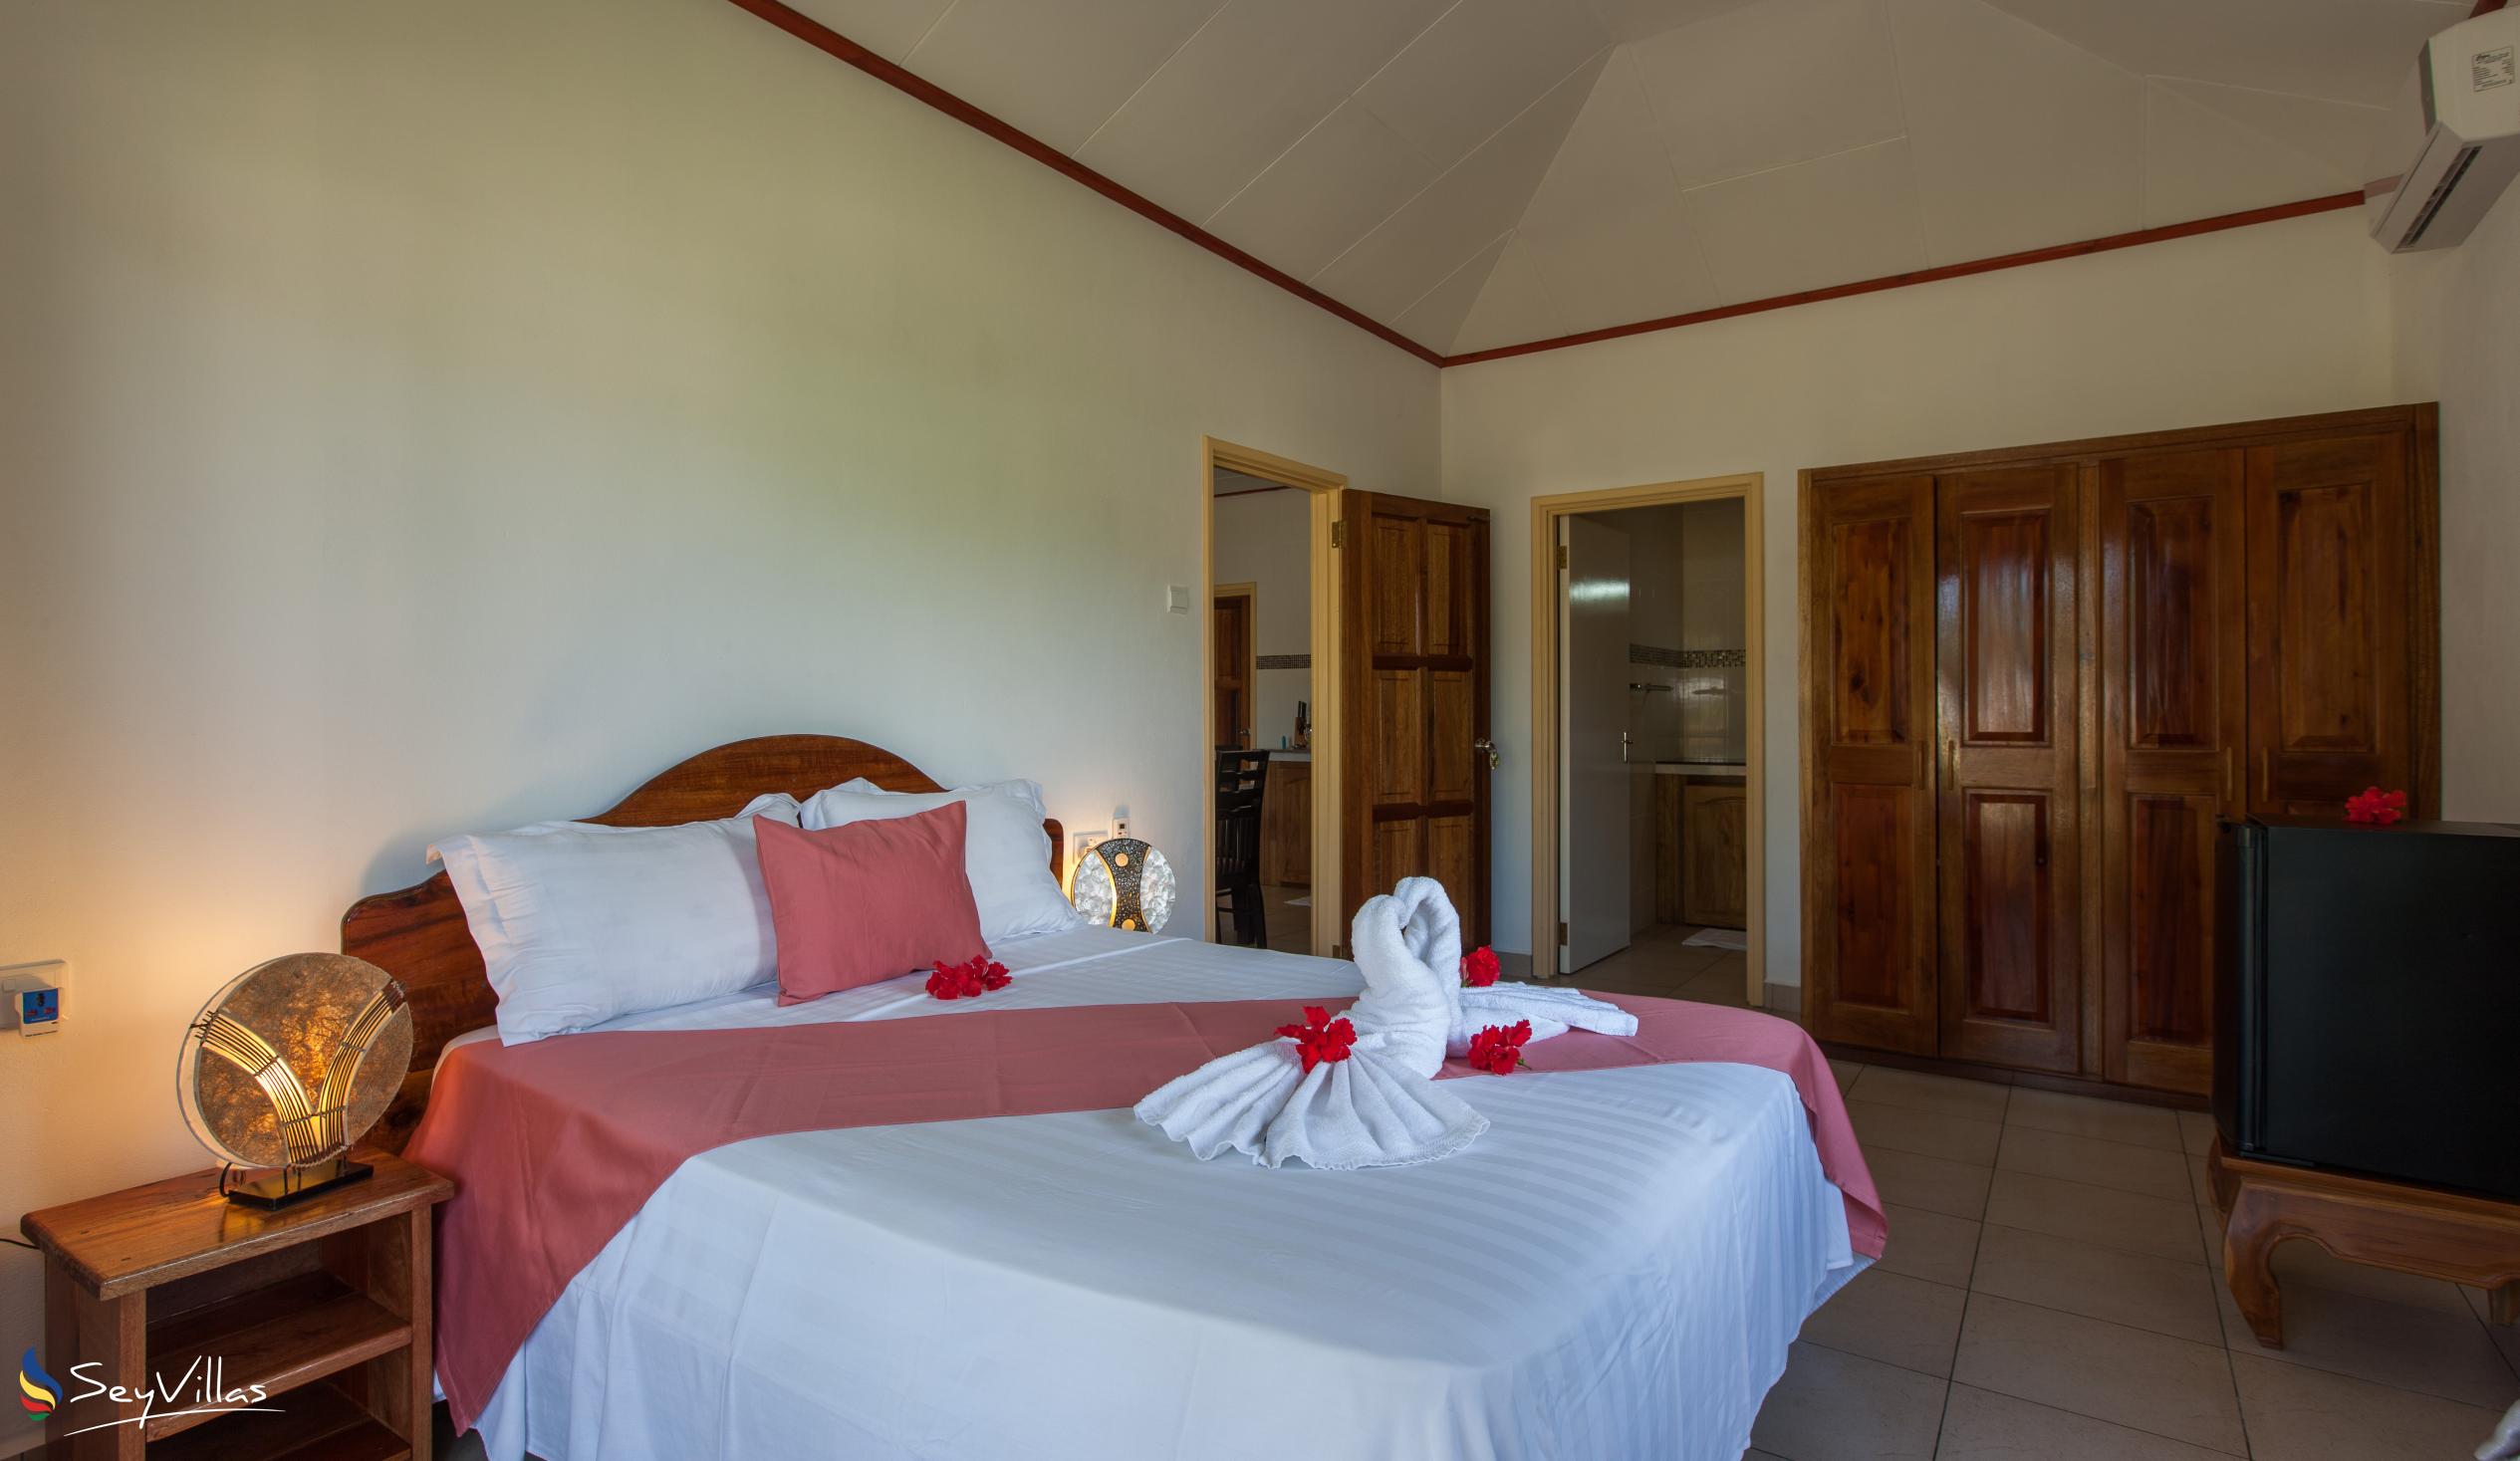 Photo 61: Hostellerie La Digue - 2-Bedroom Chalet - La Digue (Seychelles)